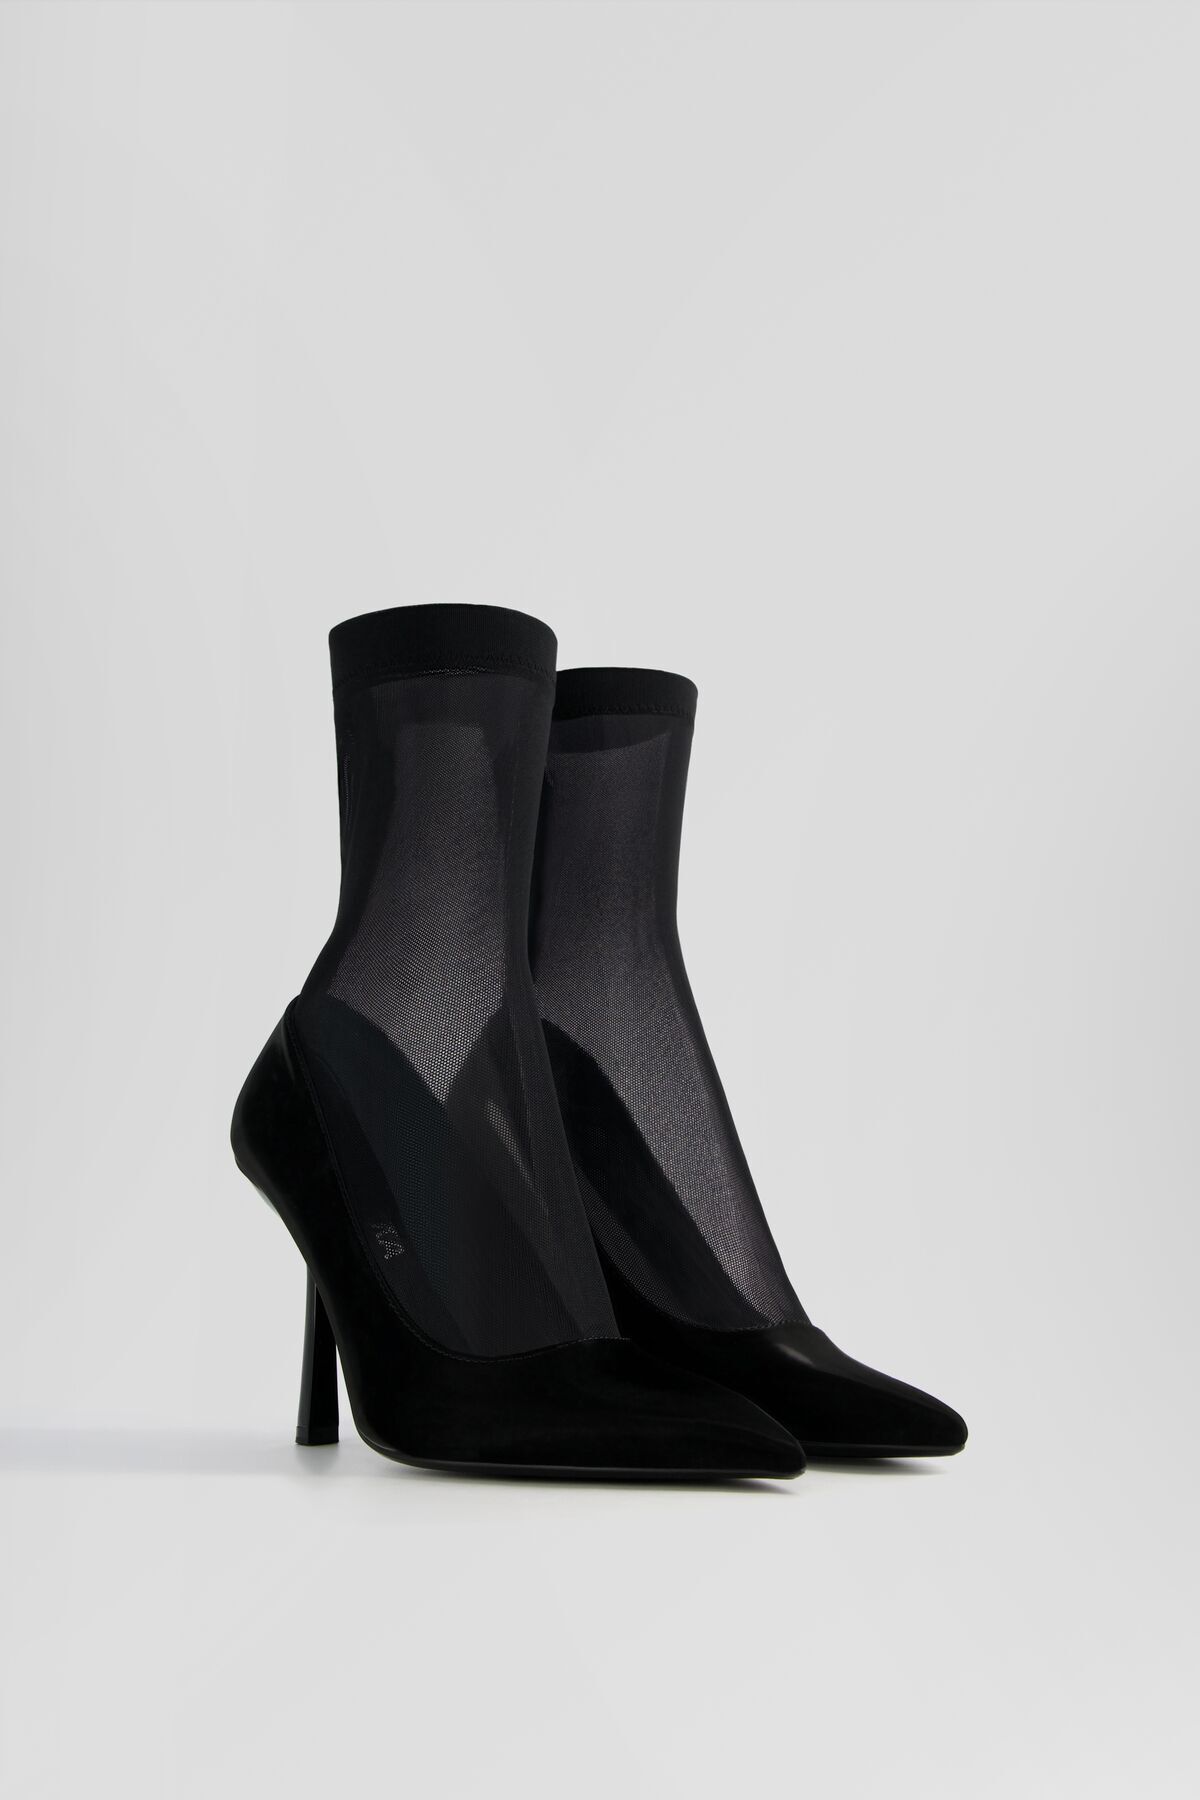 Bershka Çorap model topuklu ayakkabı